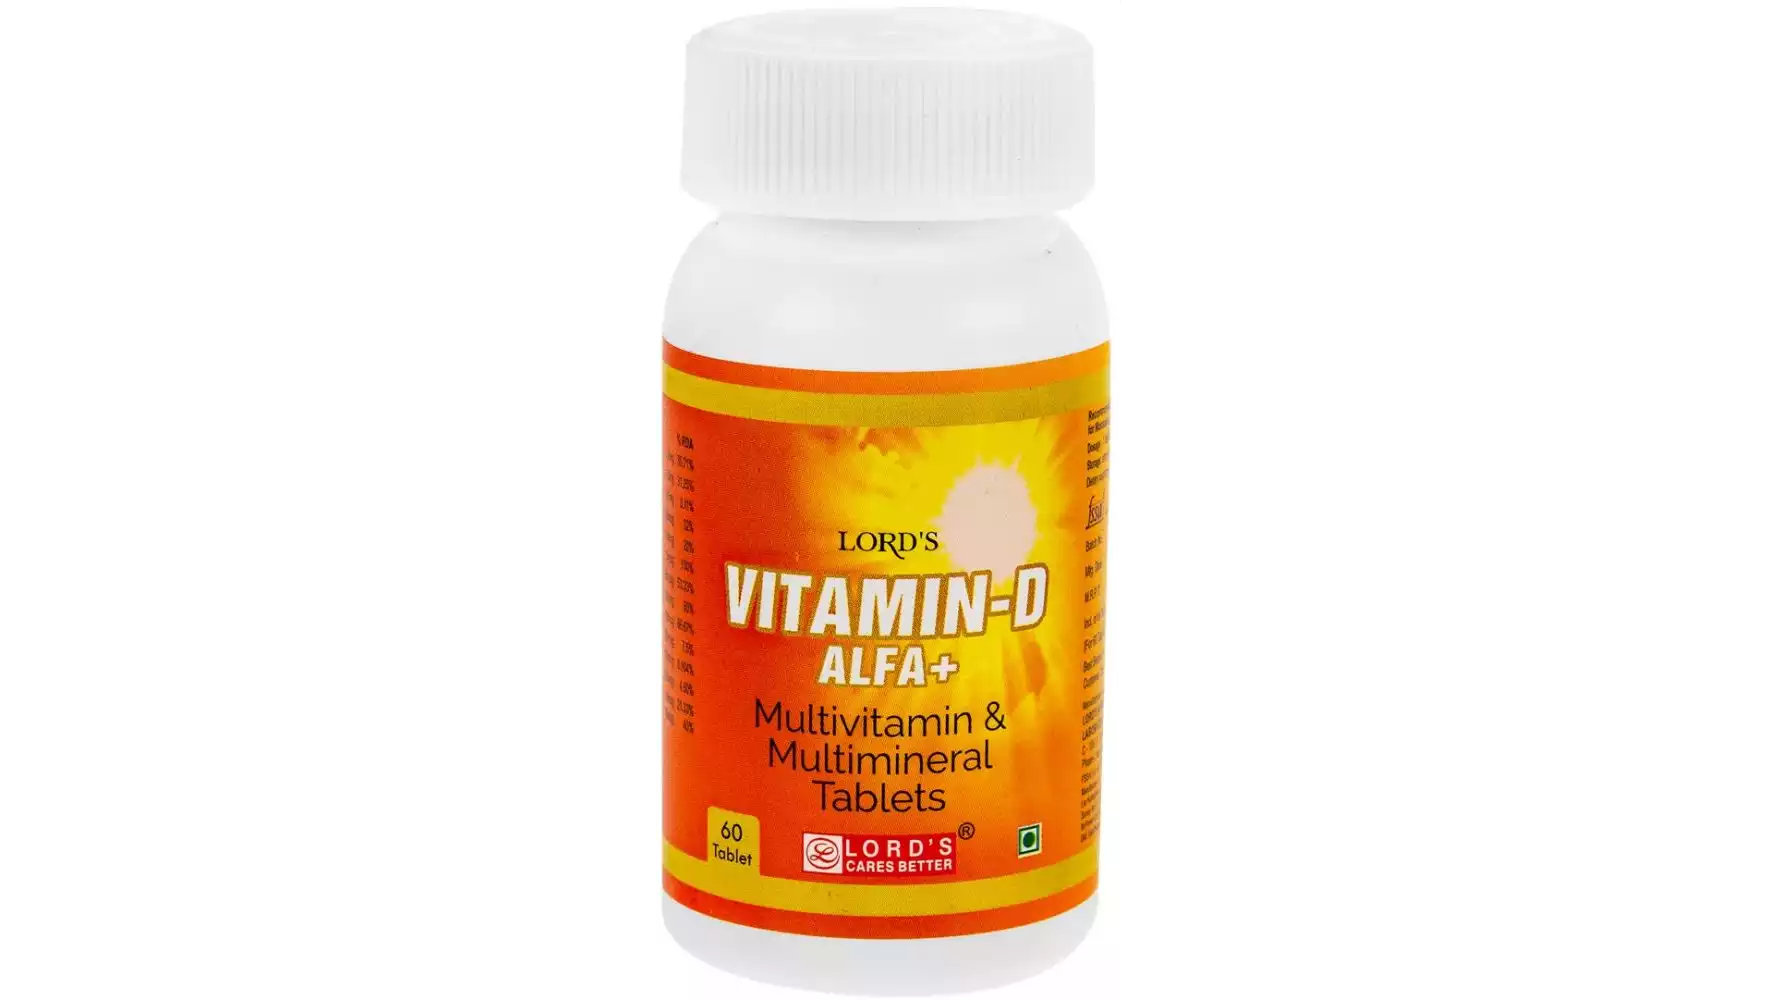 Lords Vitamin D Alfa + Tablets (60tab)